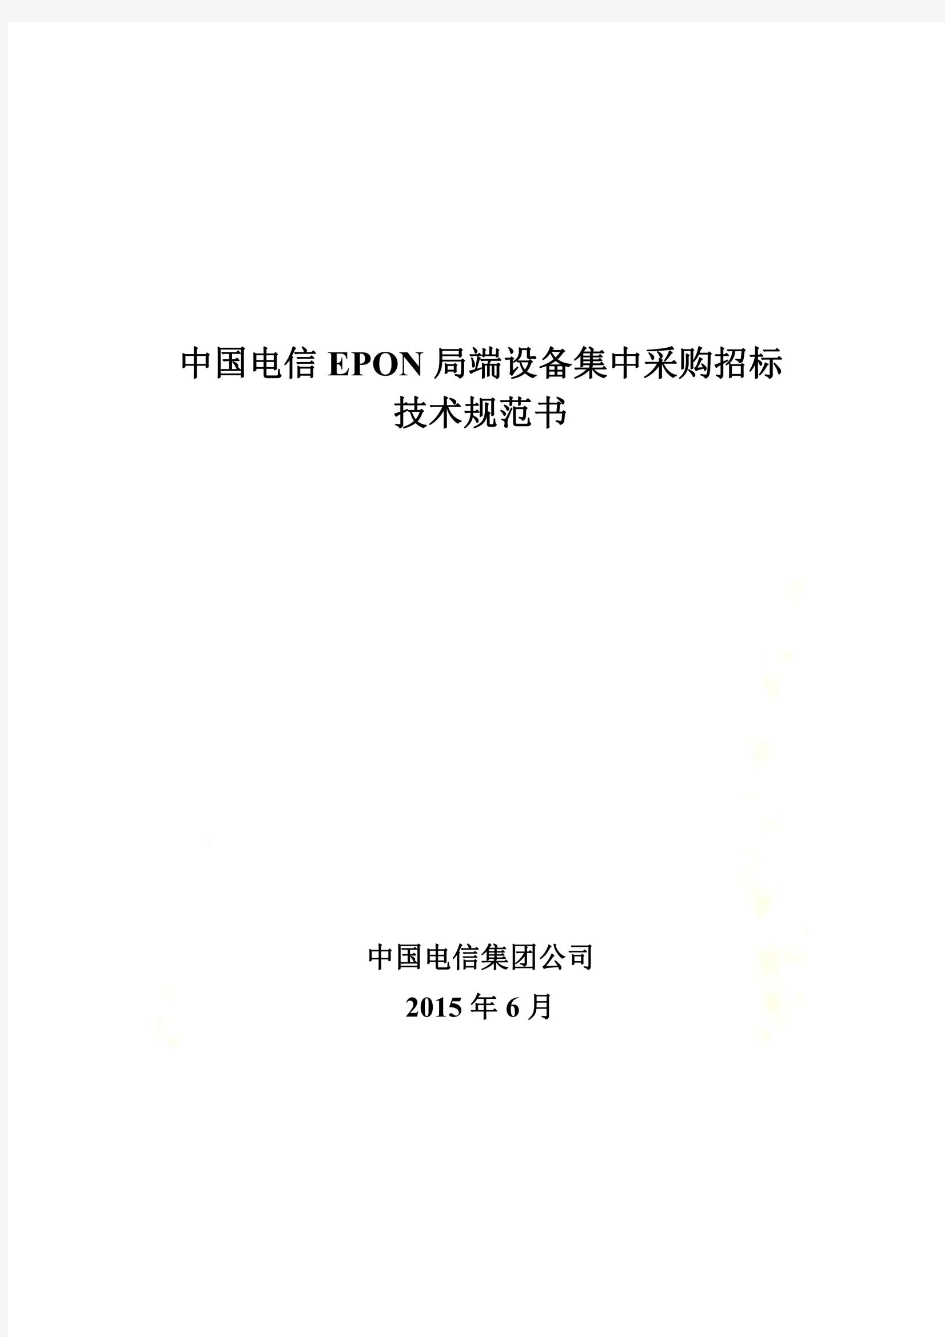 中国电信EPON局端设备招标技术规范书